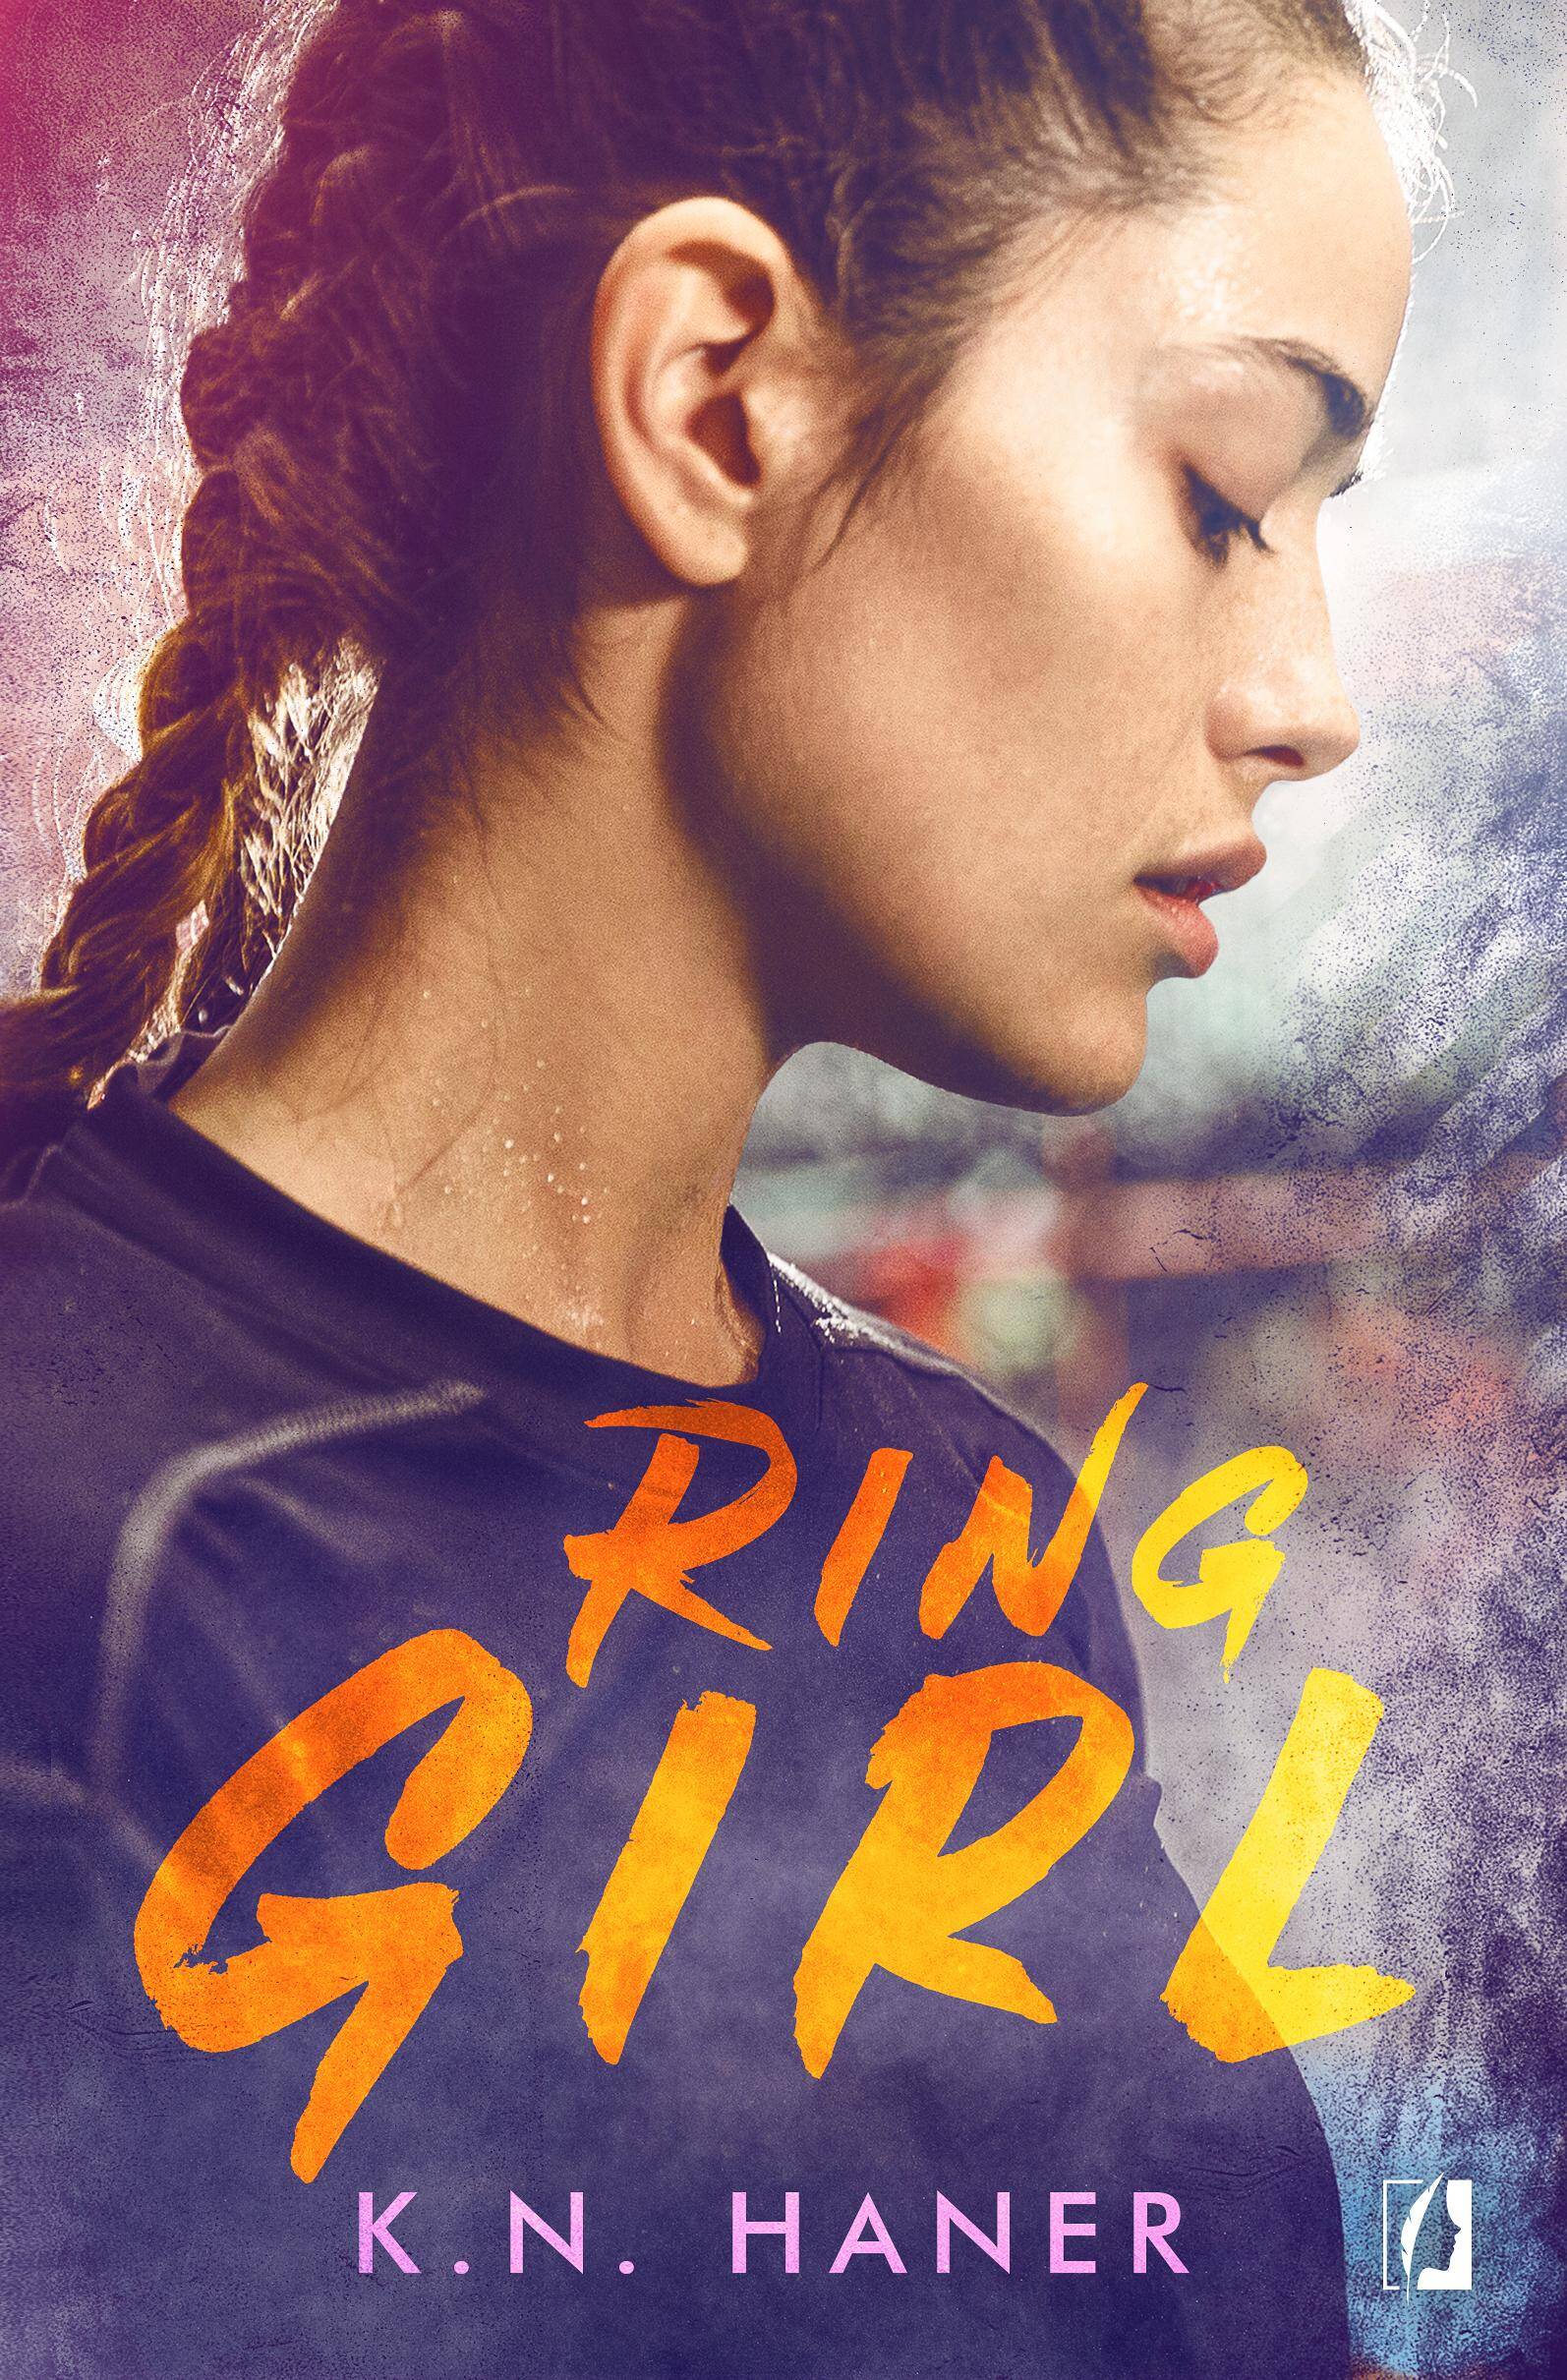 Ring Girl wyd. kieszonkowe